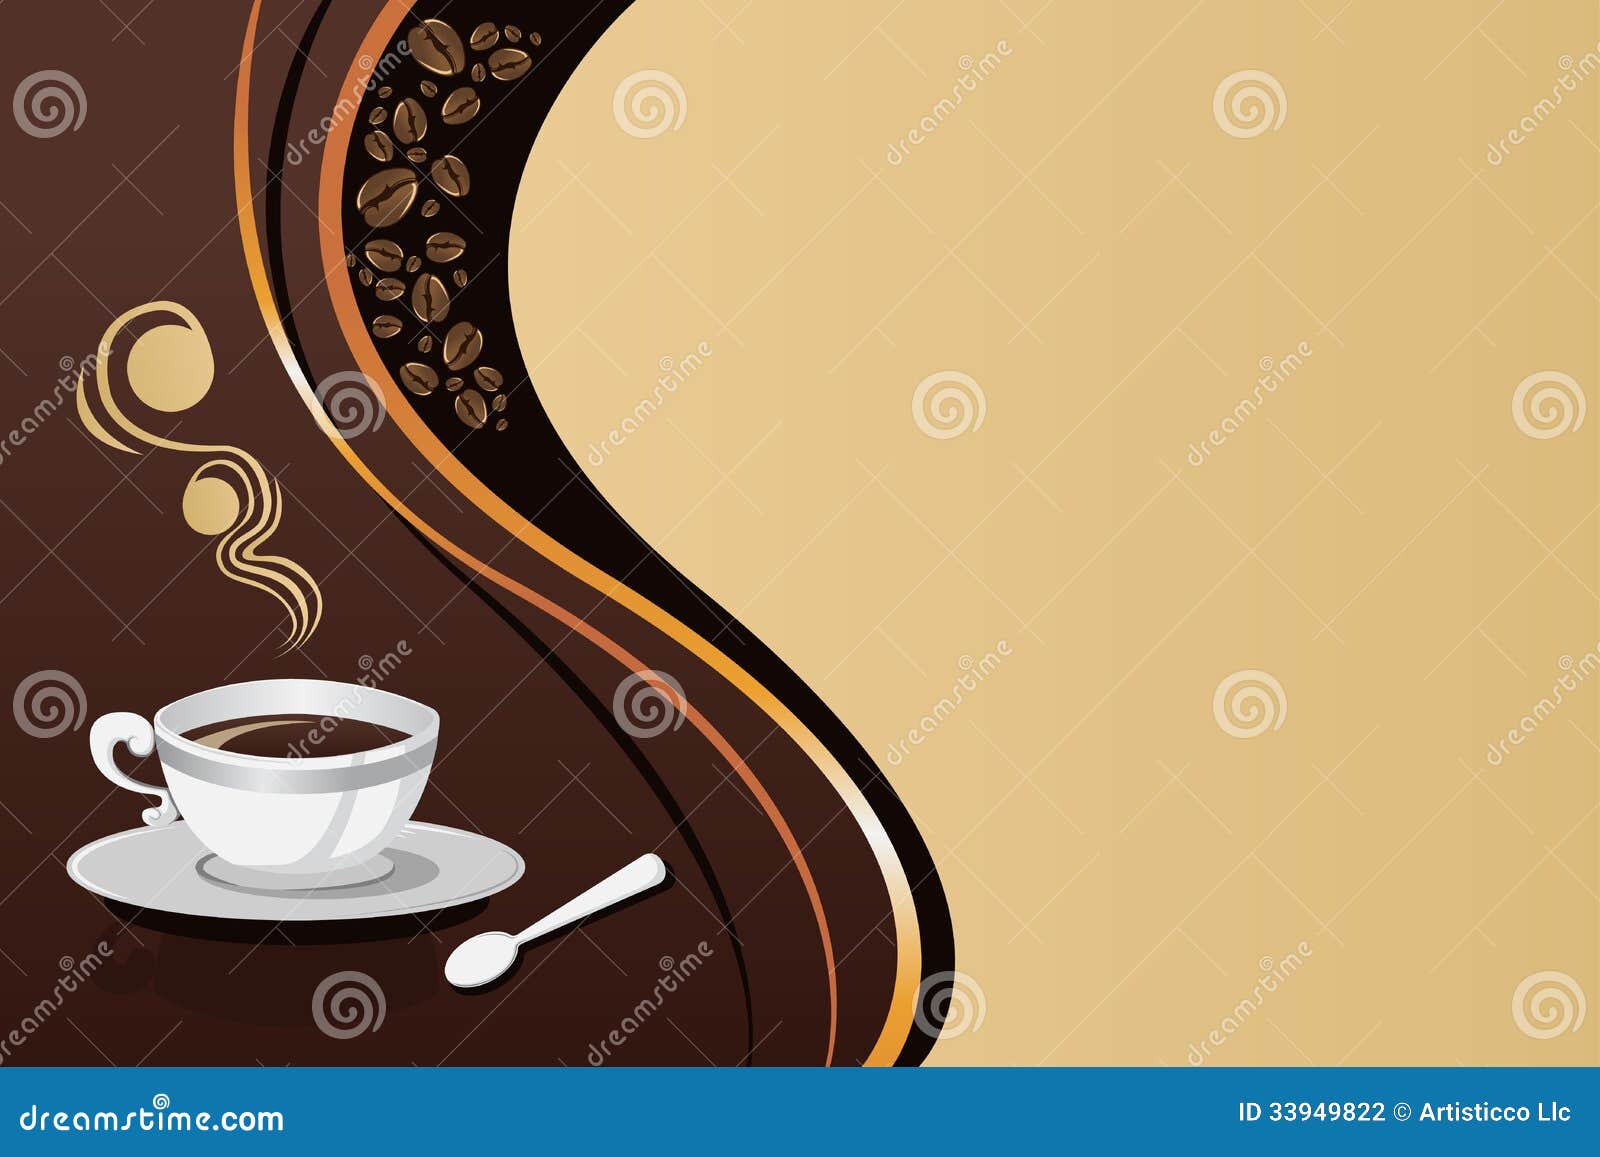 Ly cà phê – món đồ uống không thể thiếu trong cuộc sống hiện đại. Hãy xem hình minh họa ly cà phê của chúng tôi và tận hưởng được không gian ấm cúng, ngọt ngào mà nó mang lại. 